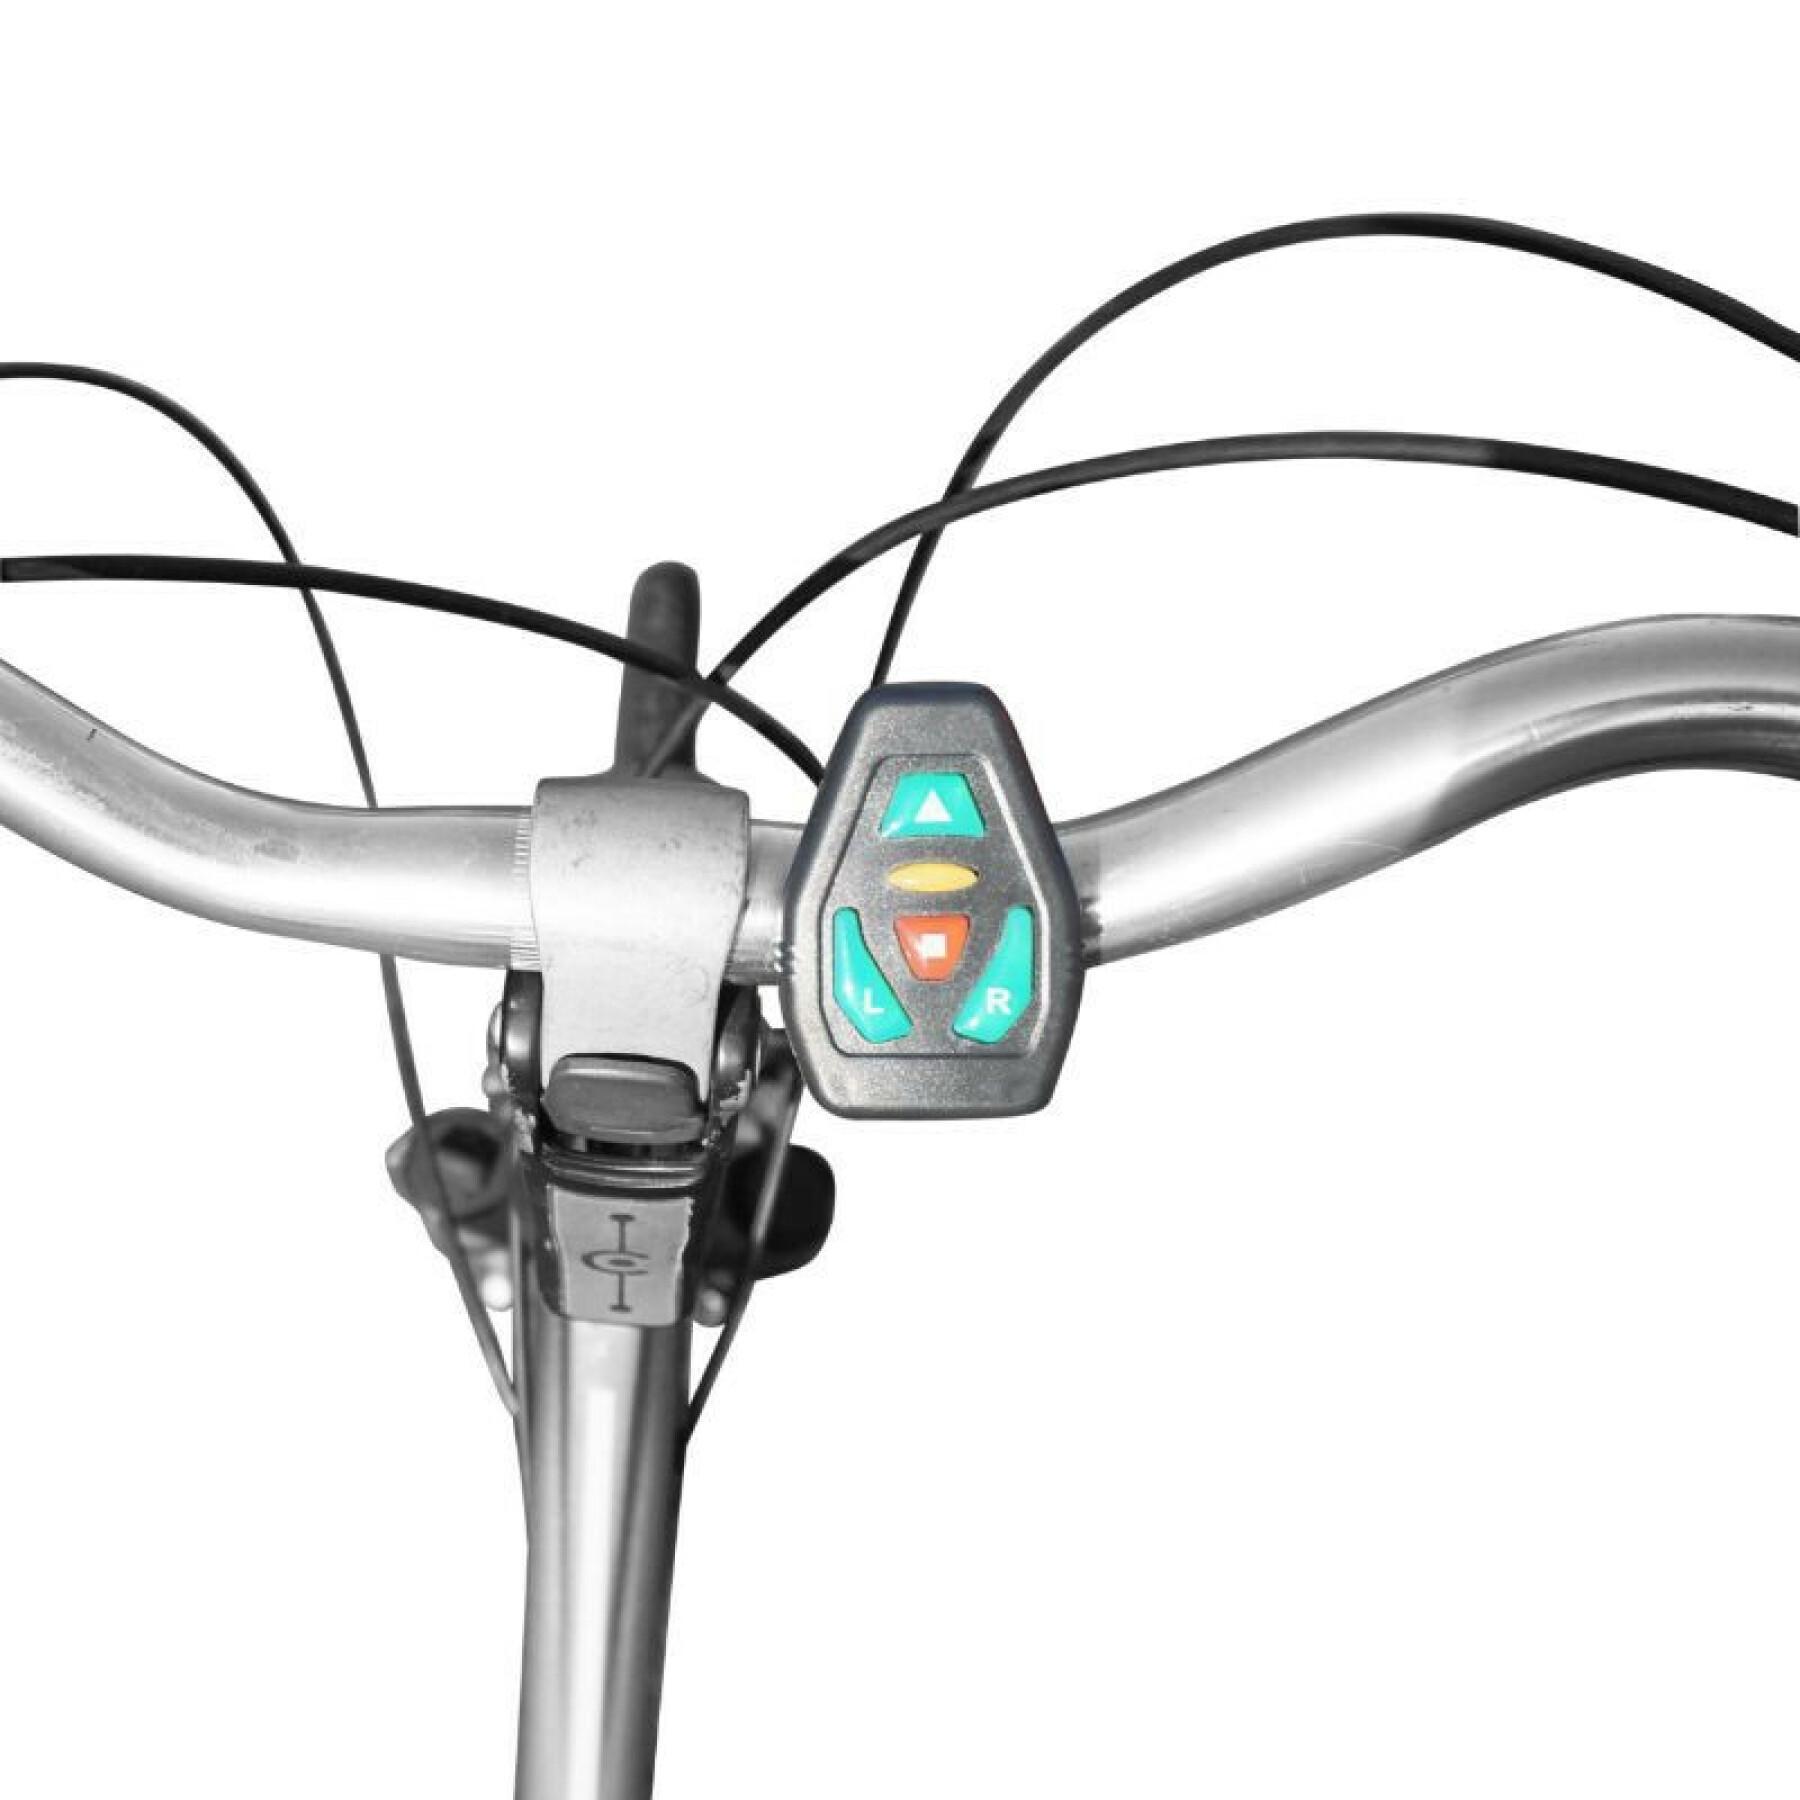 körperbeleuchtung-geschirr mit integrierter signalgebung 48 led - fernbedienung kabelloser bügel richtungsanzeiger usb-aufladbar (auf weste-weste) fahrrad - trottinett P2R